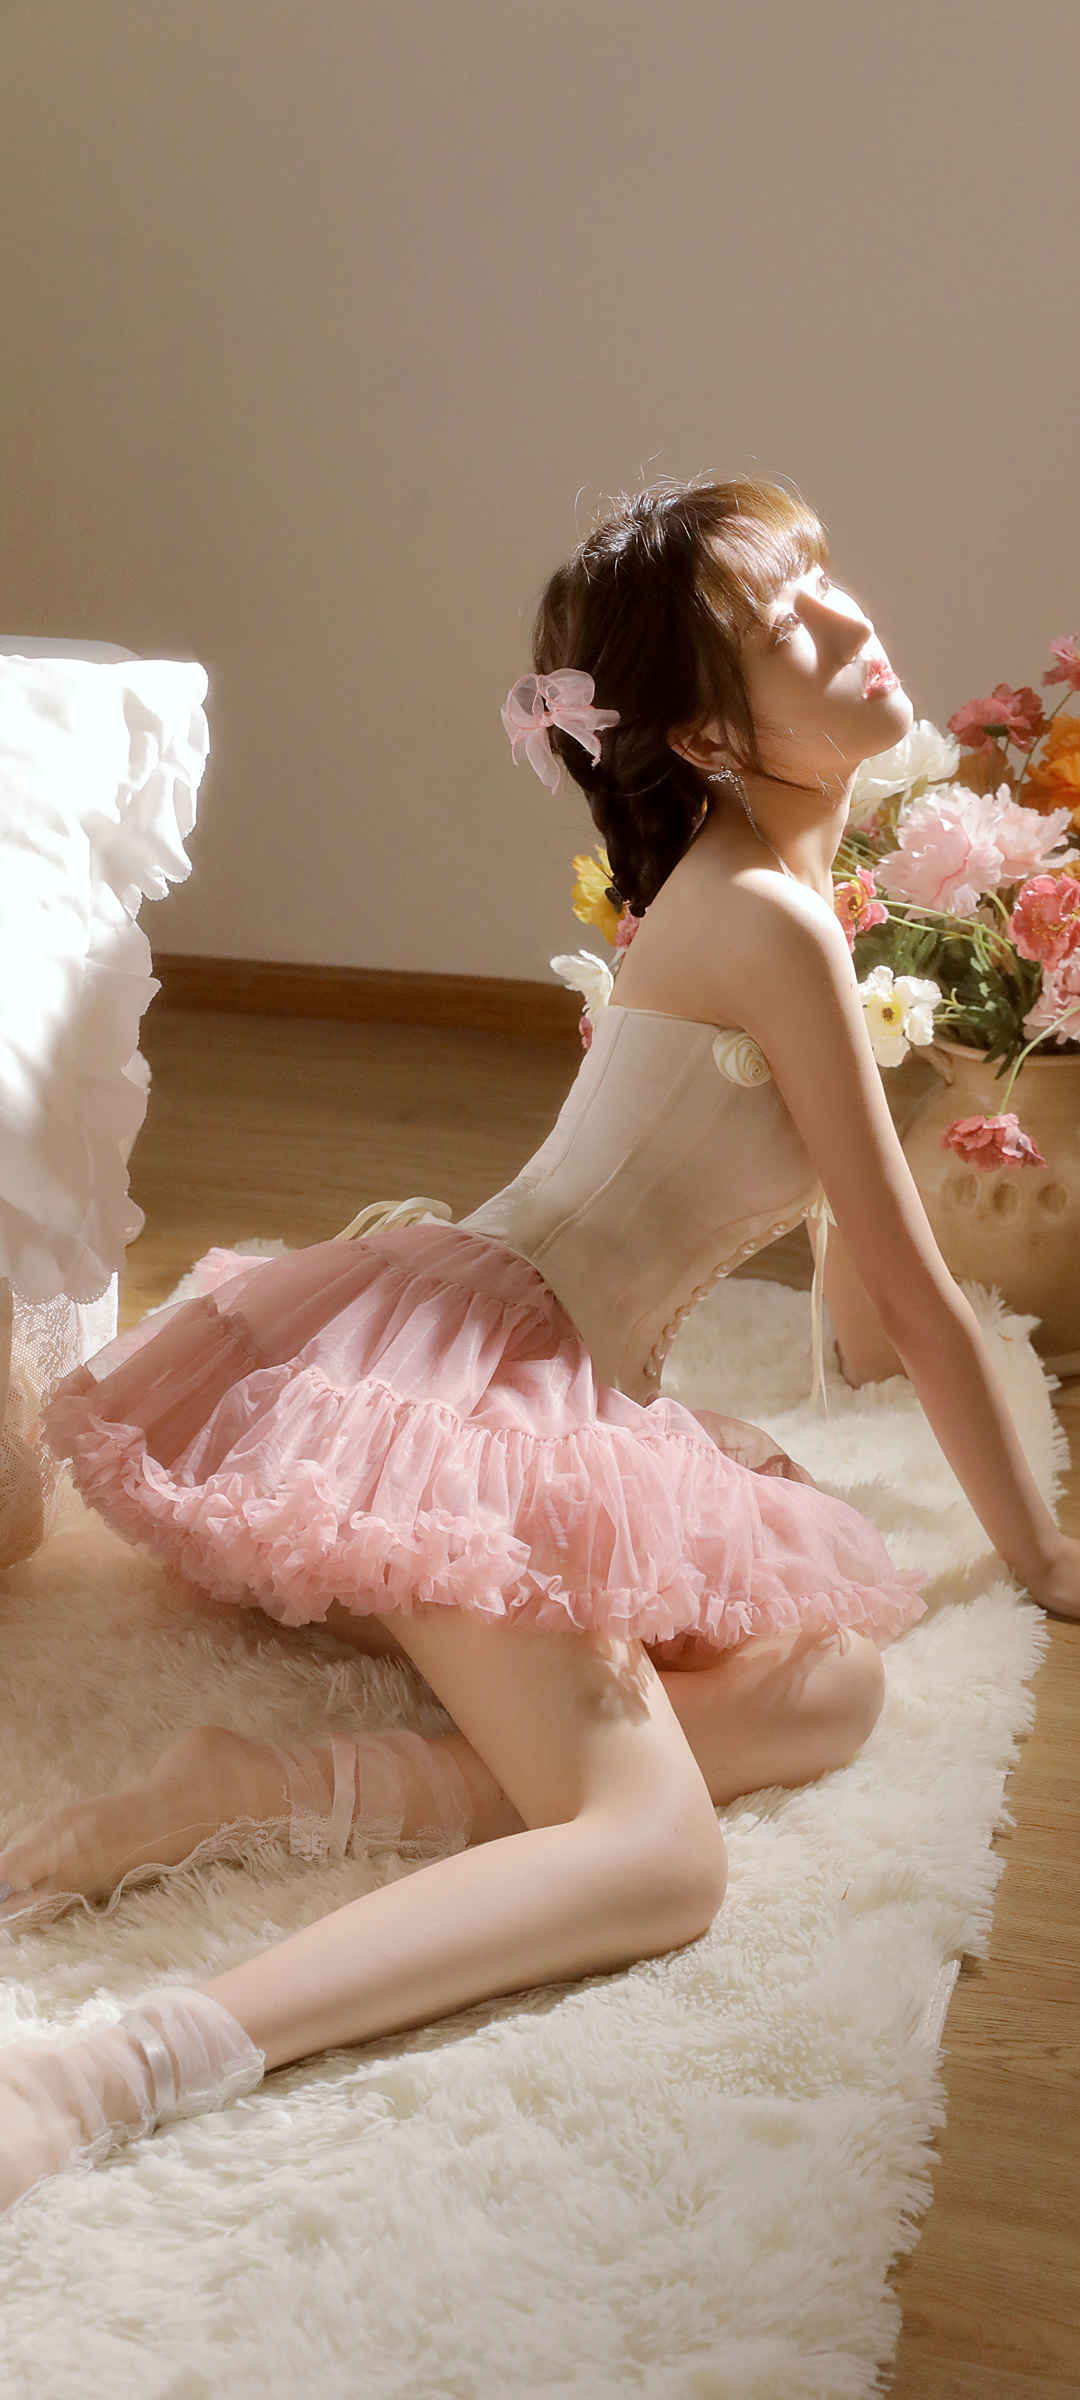 粉色裙子美腿美女手机壁纸-